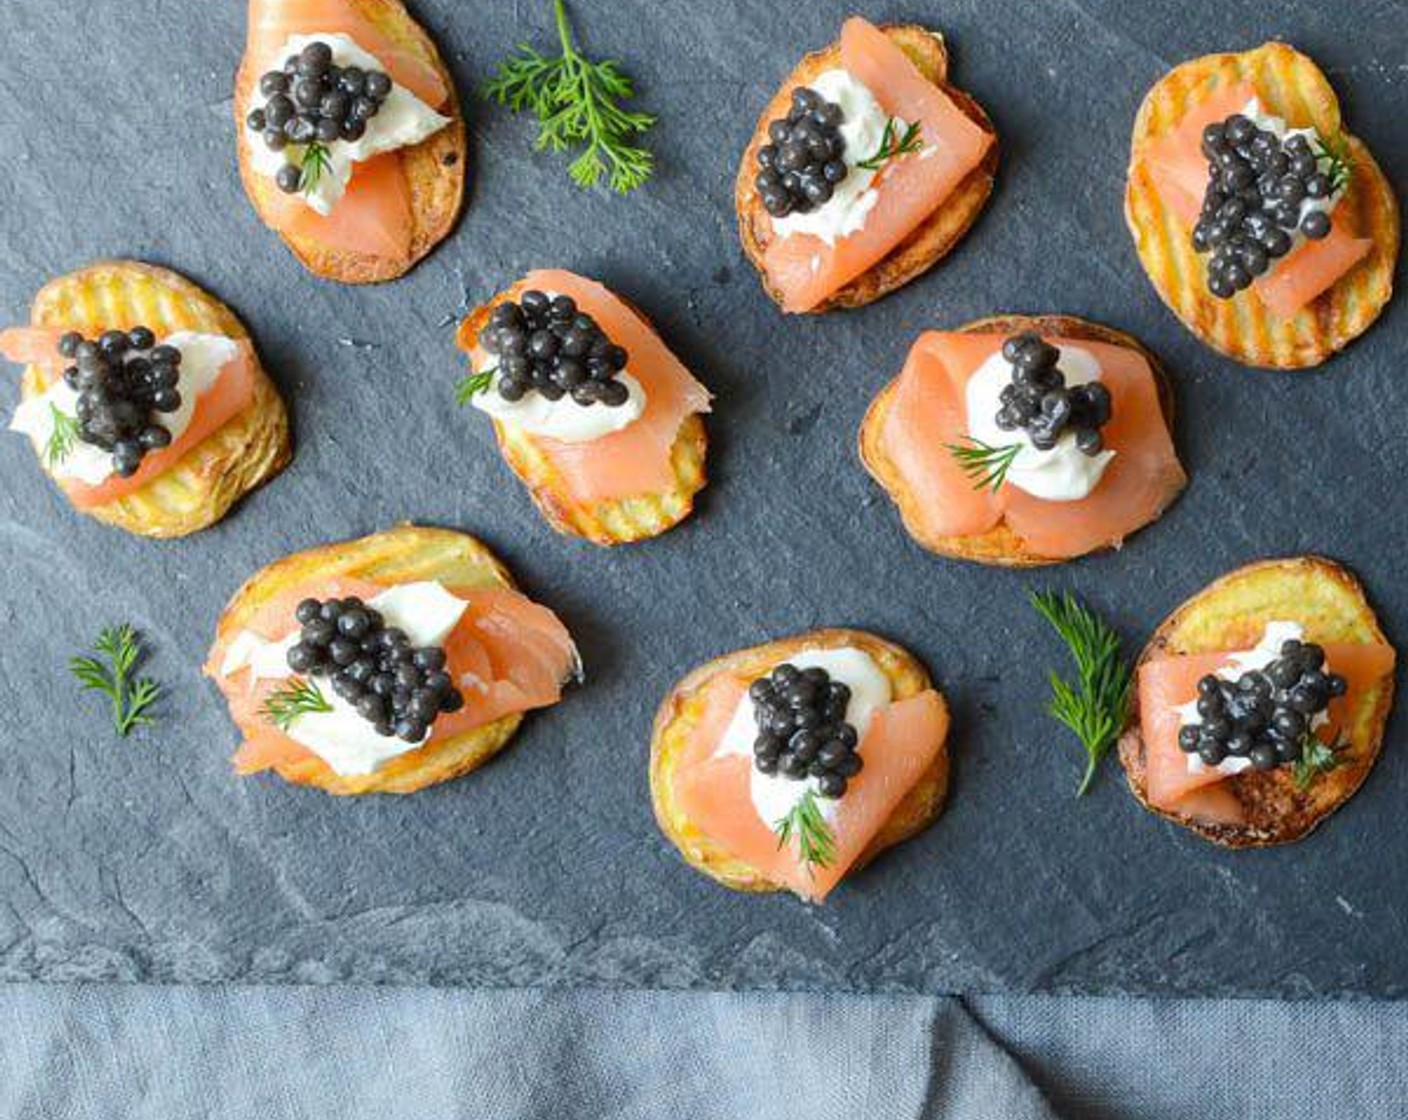 Smoked Salmon and Caviar on Crispy Potatoes